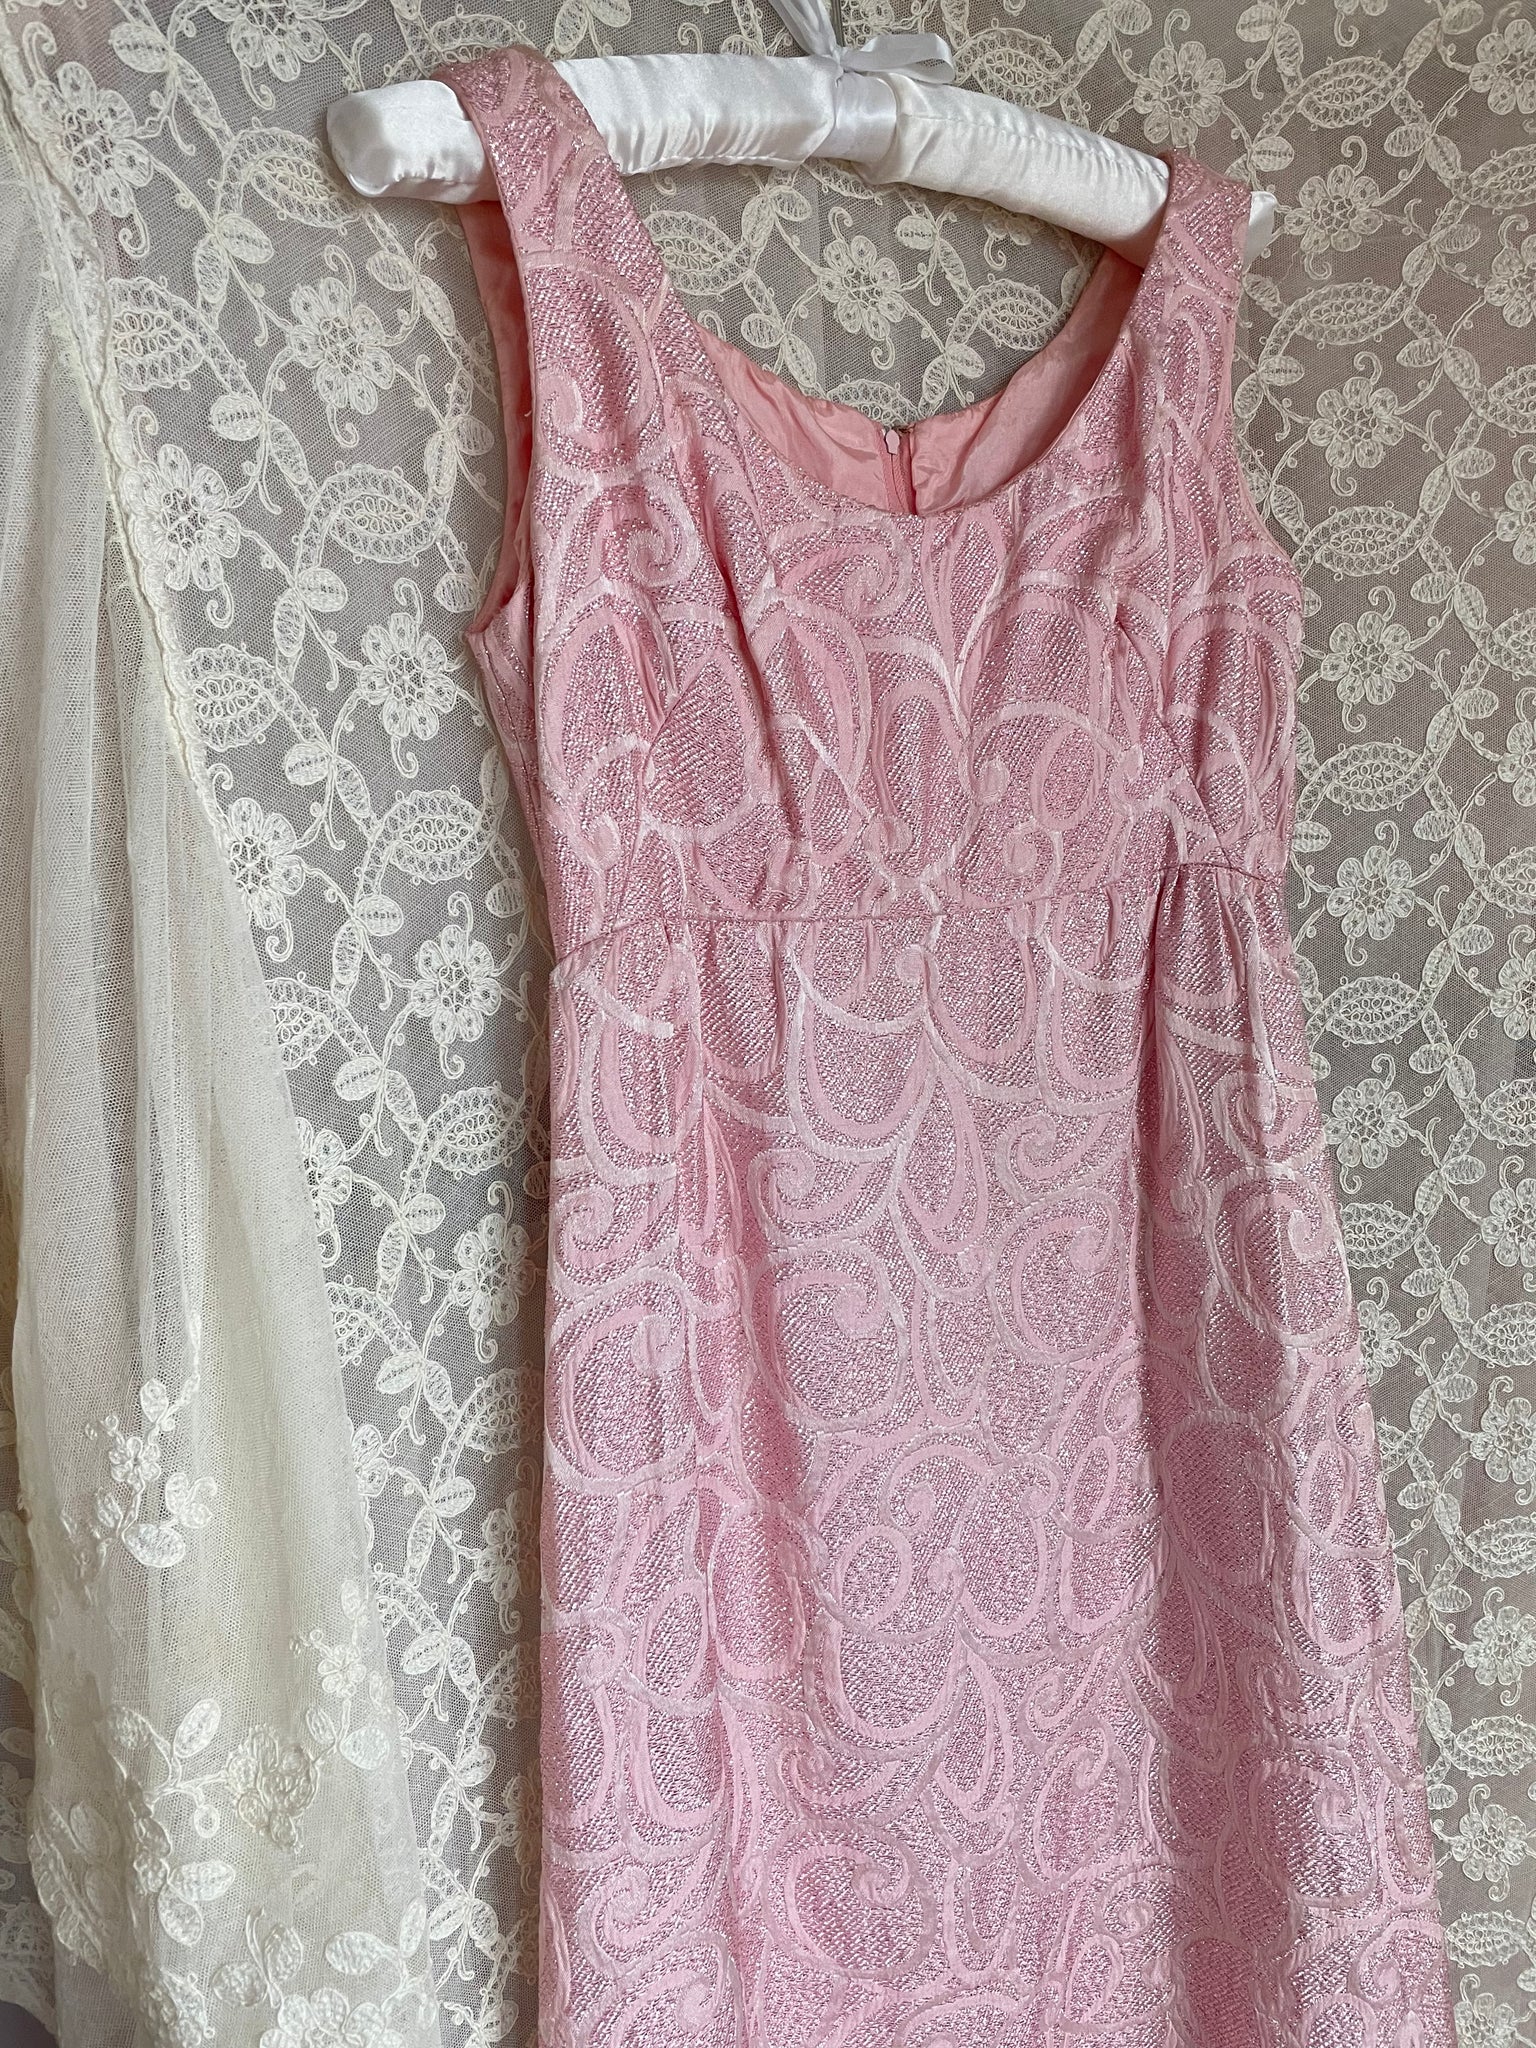 1970s Light Pink Sparkle Lurex Empire Waist Dress